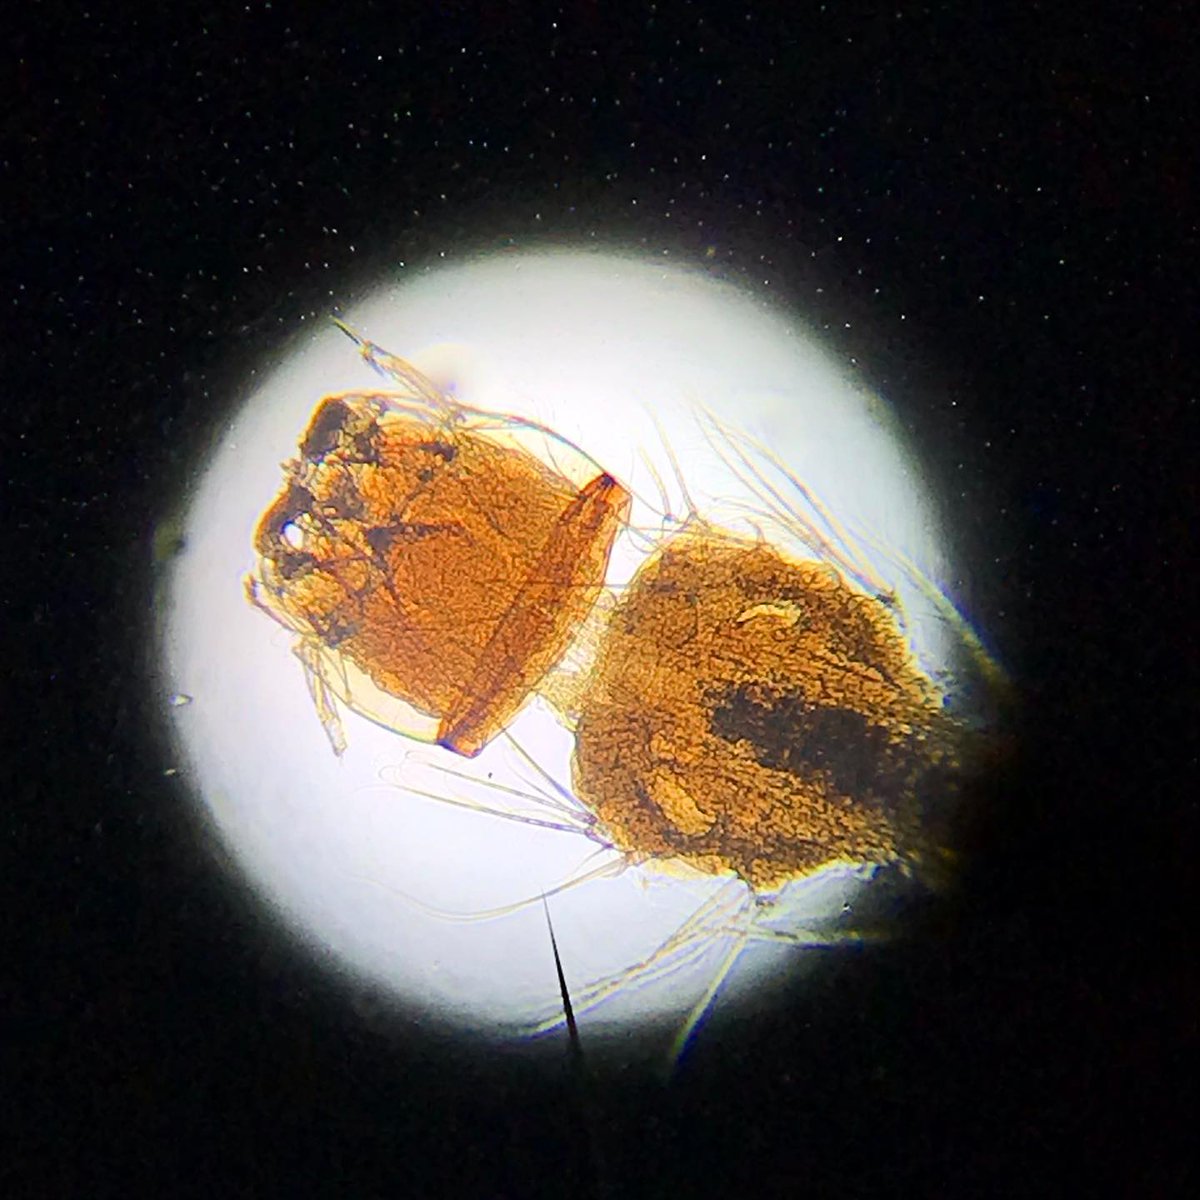 Sıtma etkeni olan Plasmodium'u bulaştıran Anofel larvası (Anopheles mosquito) mikroskobik görüntüsü.
Malarya hakkında bazı bilgiler:
Dünyada ve ülkemizde en sık saptanan sıtma etkeni Plasmodium vivax’dır.
Plasmodium türlerinin son konağı/vektörü Anofel'dir.
#dünyasıtmagünü 🦟